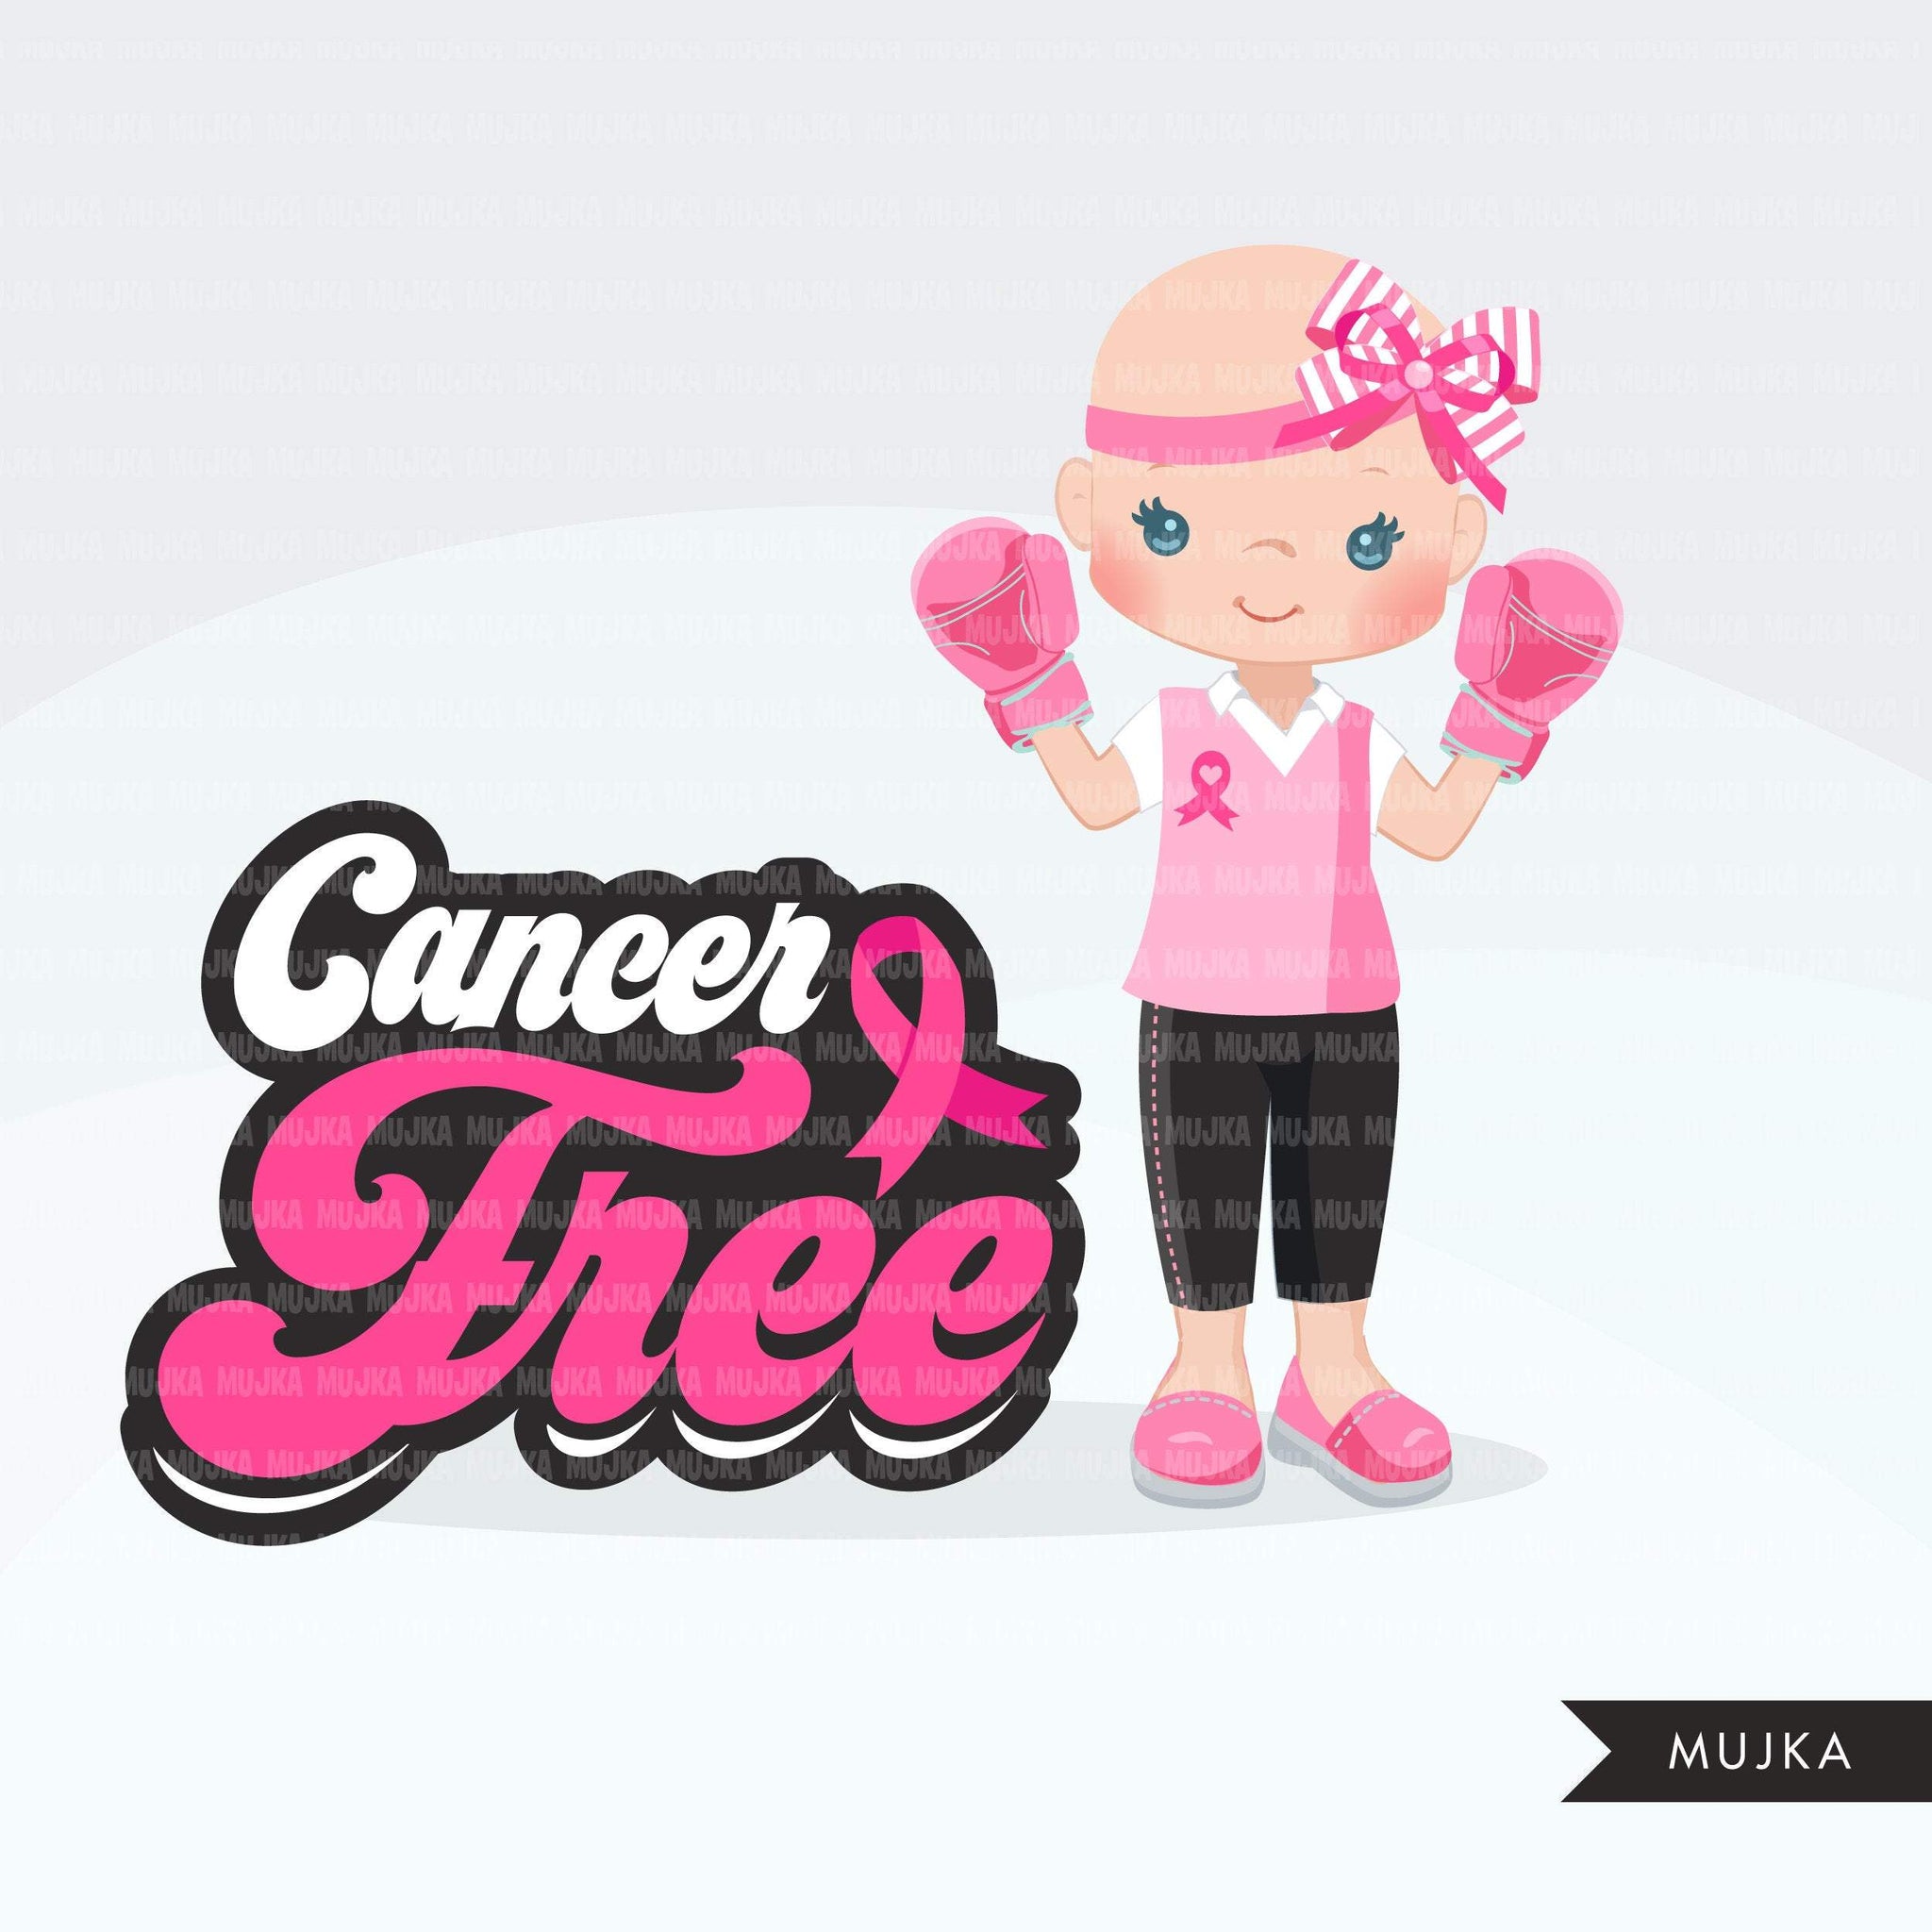 Clipart de conscientização sobre o câncer de mama. Luvas de boxe rosa, luta pela garota, fita rosa, gráficos de sobrevivente de sutiã rosa